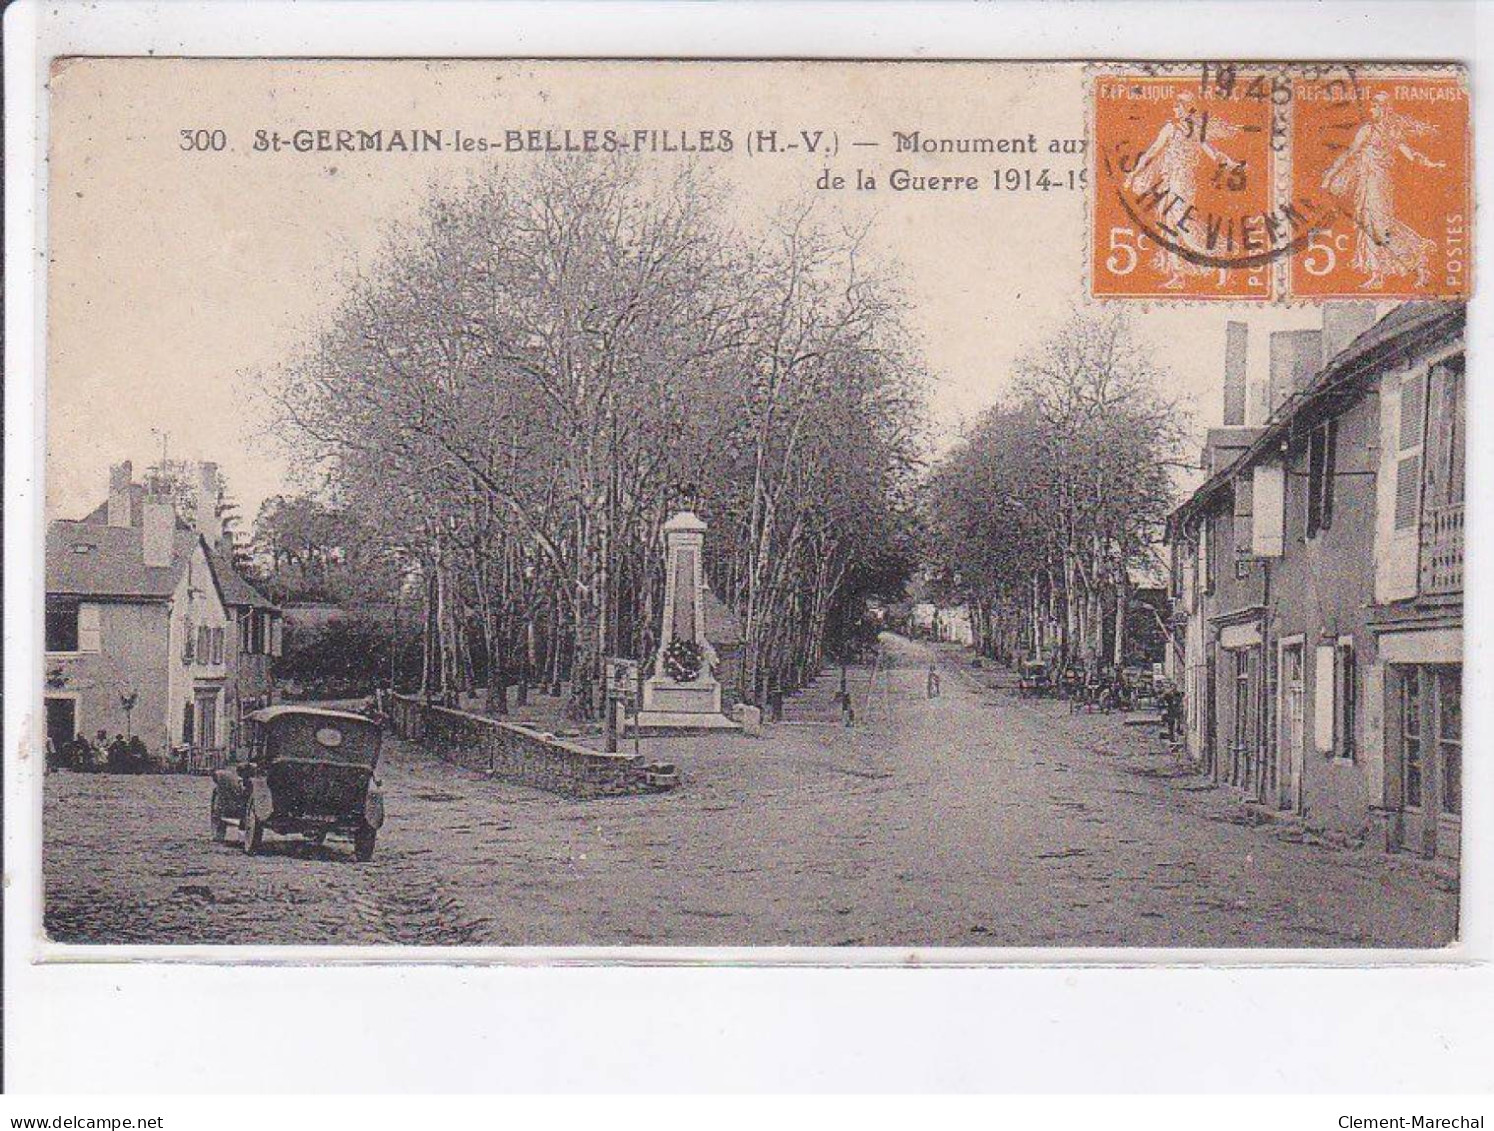 SAINT-GERMAIN-les-BELLES-FILLES: Monument Aux Morts De La Guerre 1914-1918 - Très Bon état - Saint Germain Les Belles